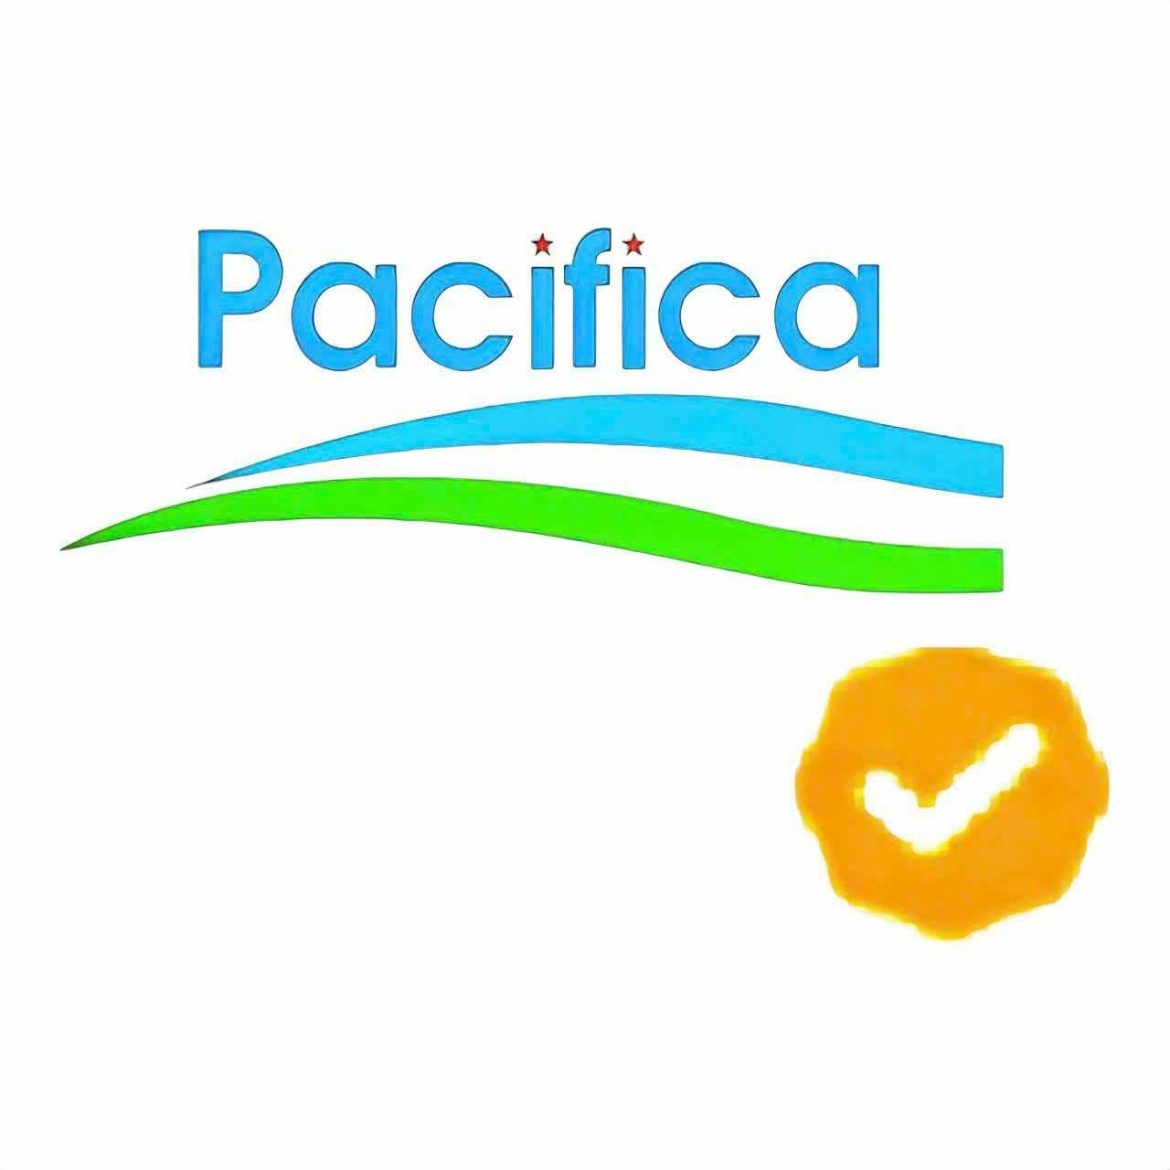 Pacifica – Sự Lựa Chọn Hoàn Hảo Cho Gia Dụng Tiện Ích và Chất Lượng